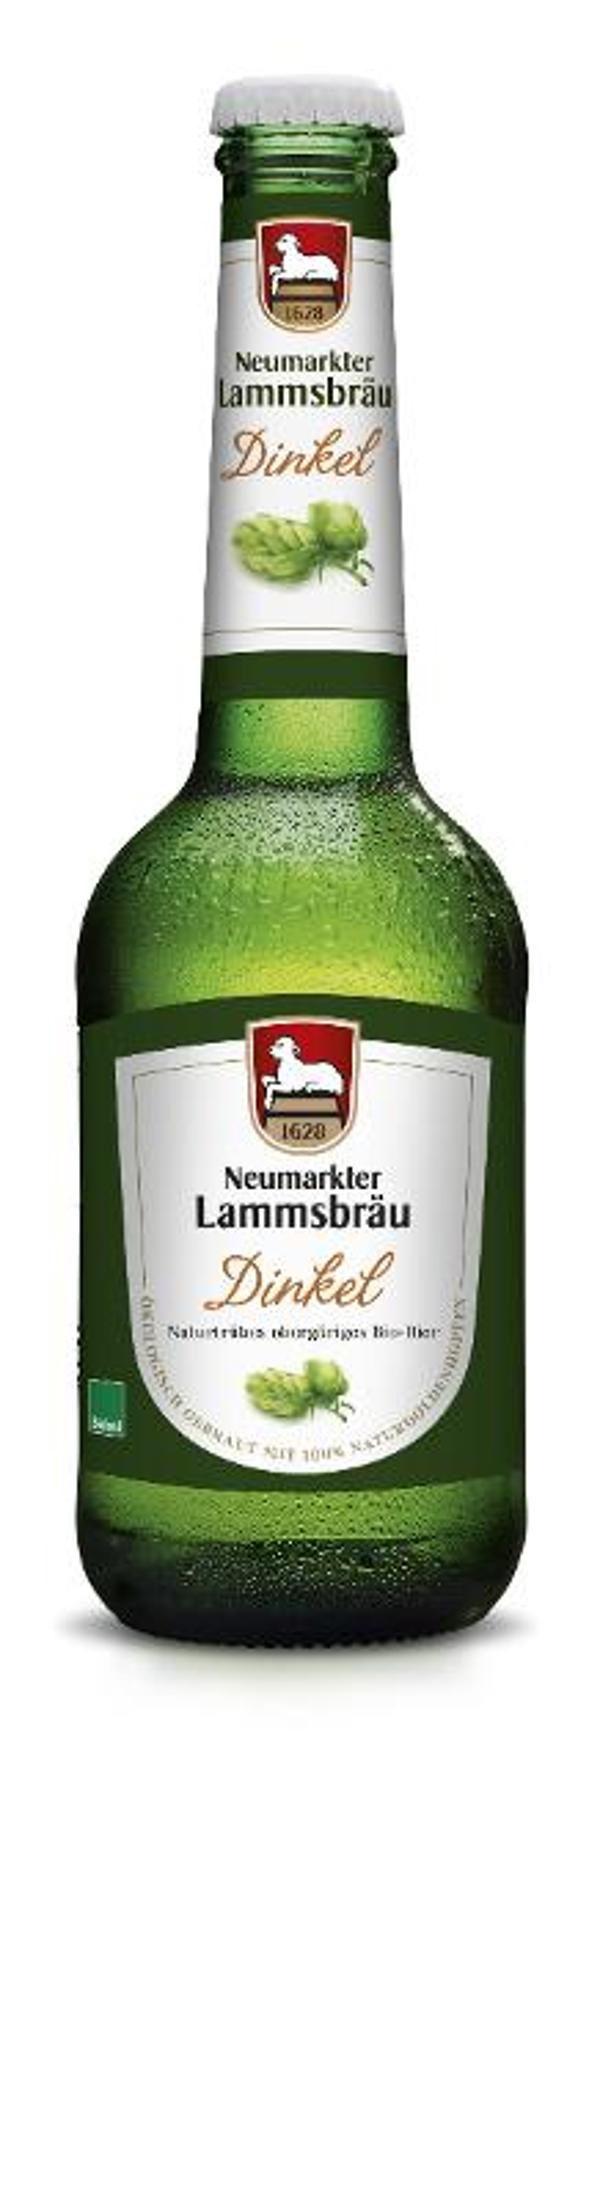 Produktfoto zu Lammsbräu Dinkelbier 0,33l